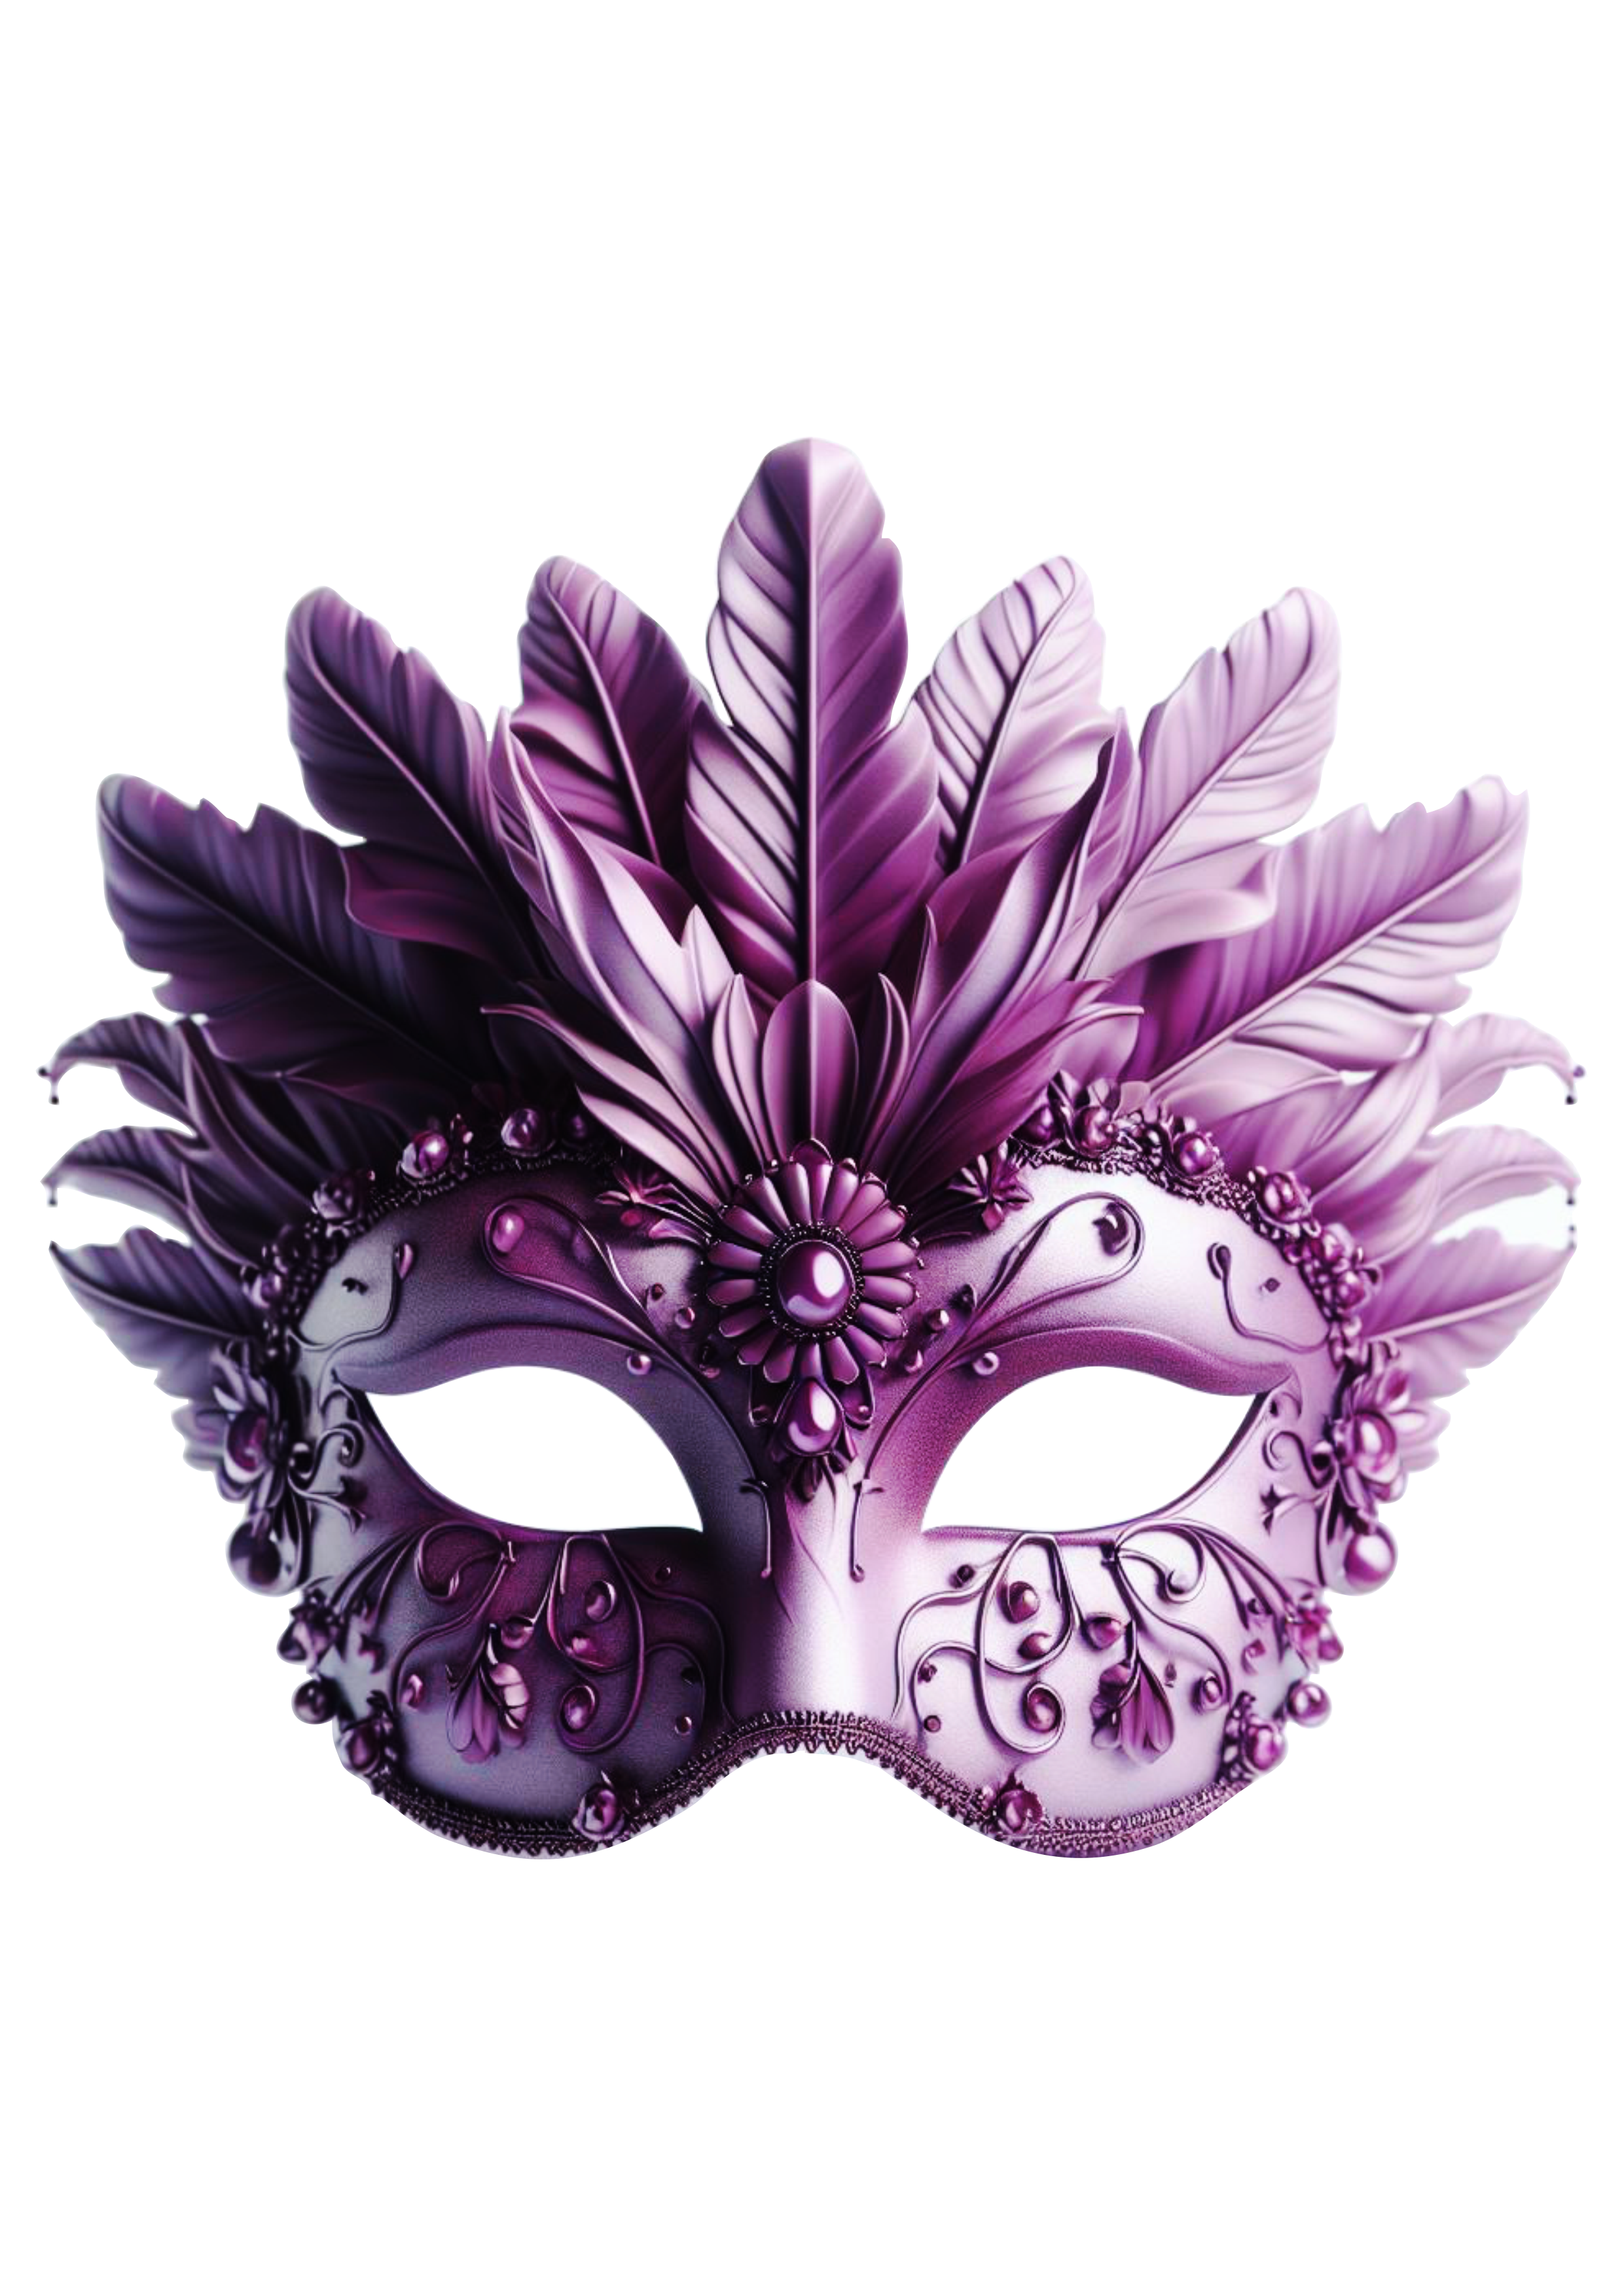 Máscara de carnaval brilhante joias baile de máscaras png image lilás com penas